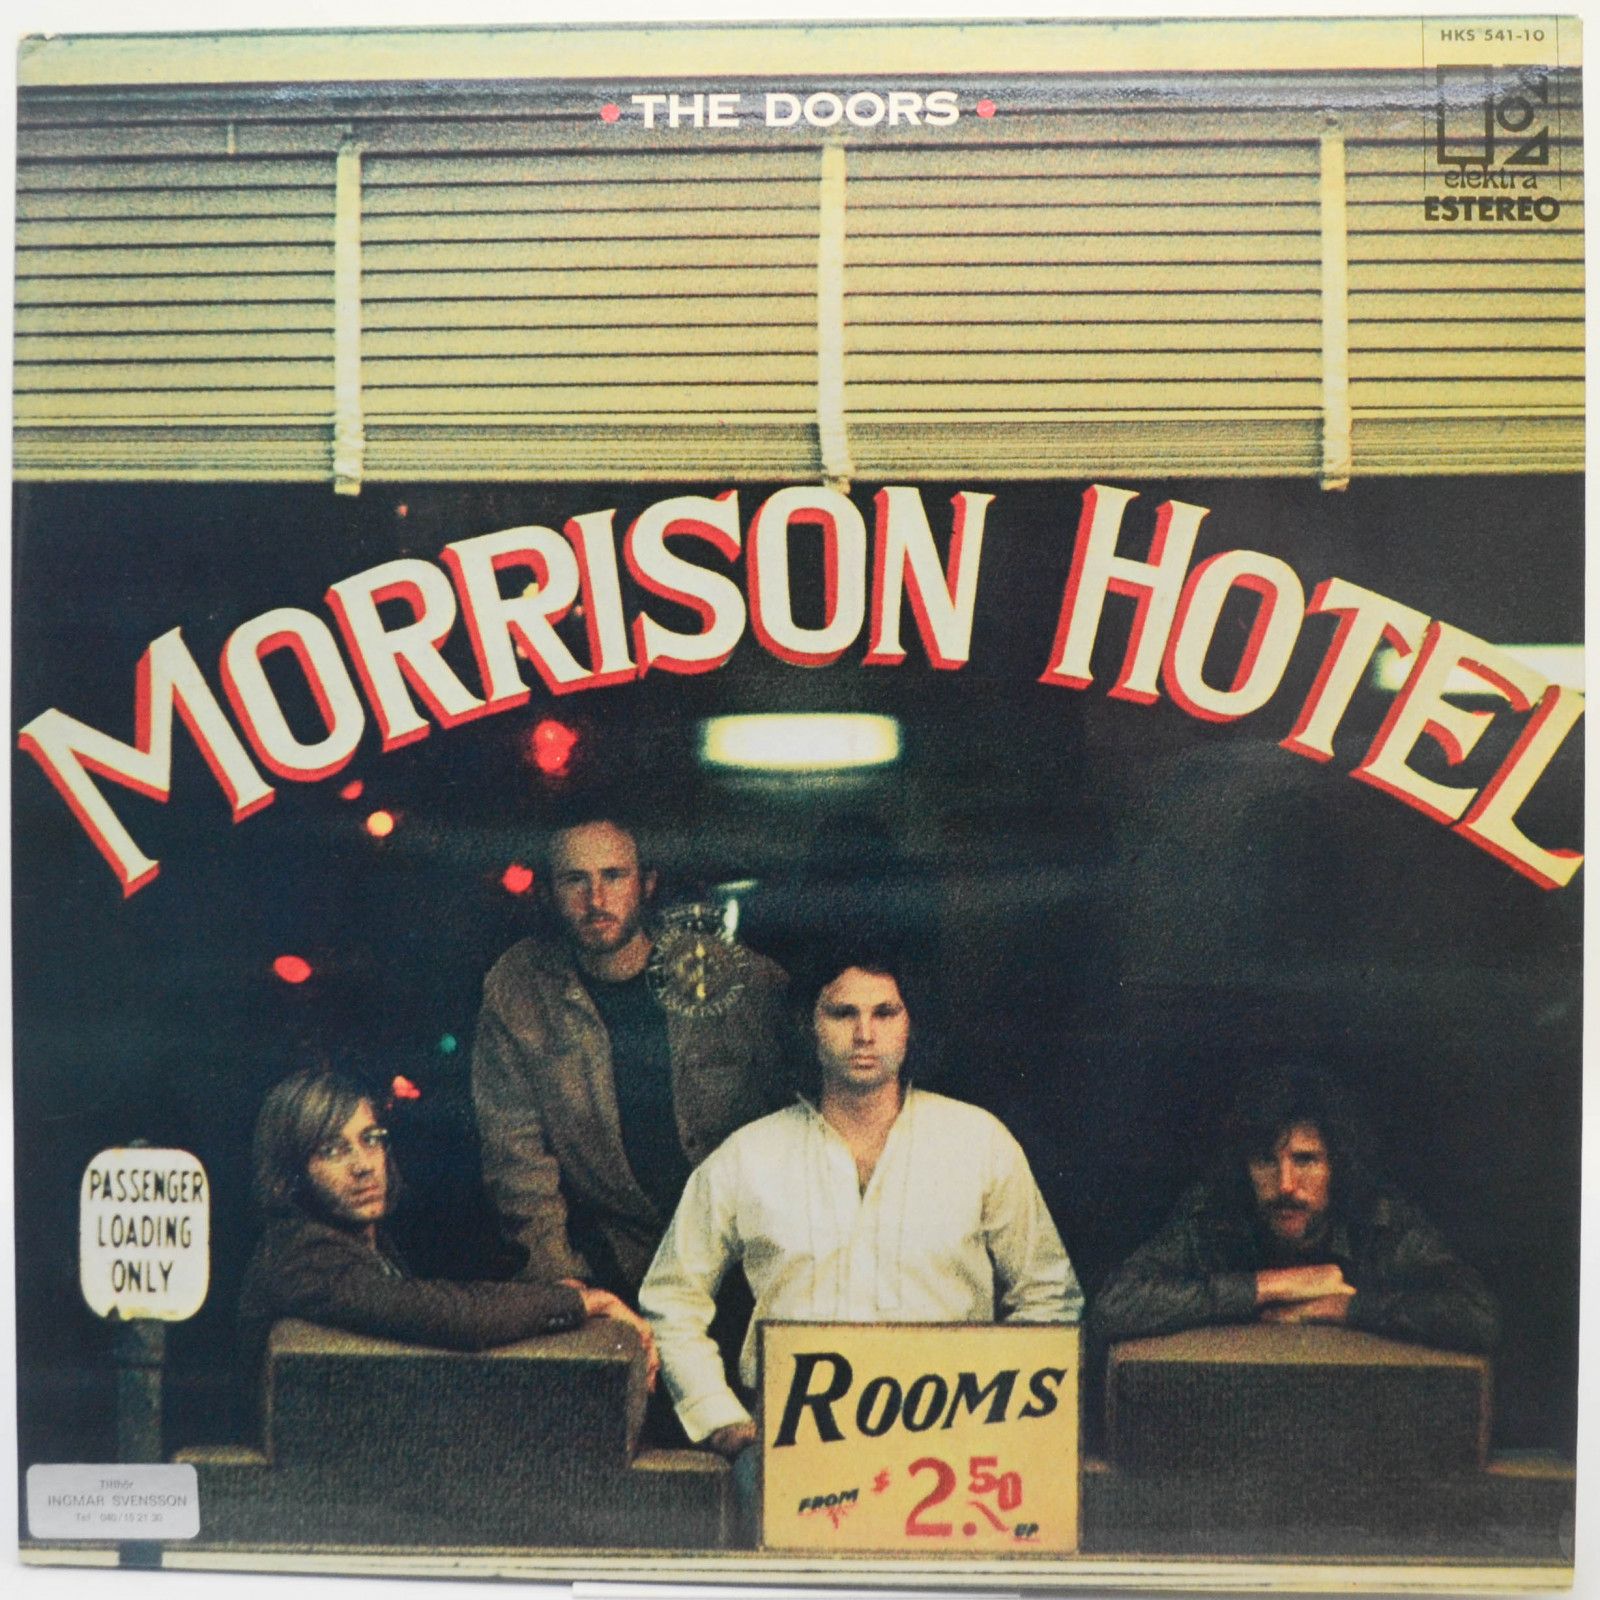 Doors — Morrison Hotel, 1970